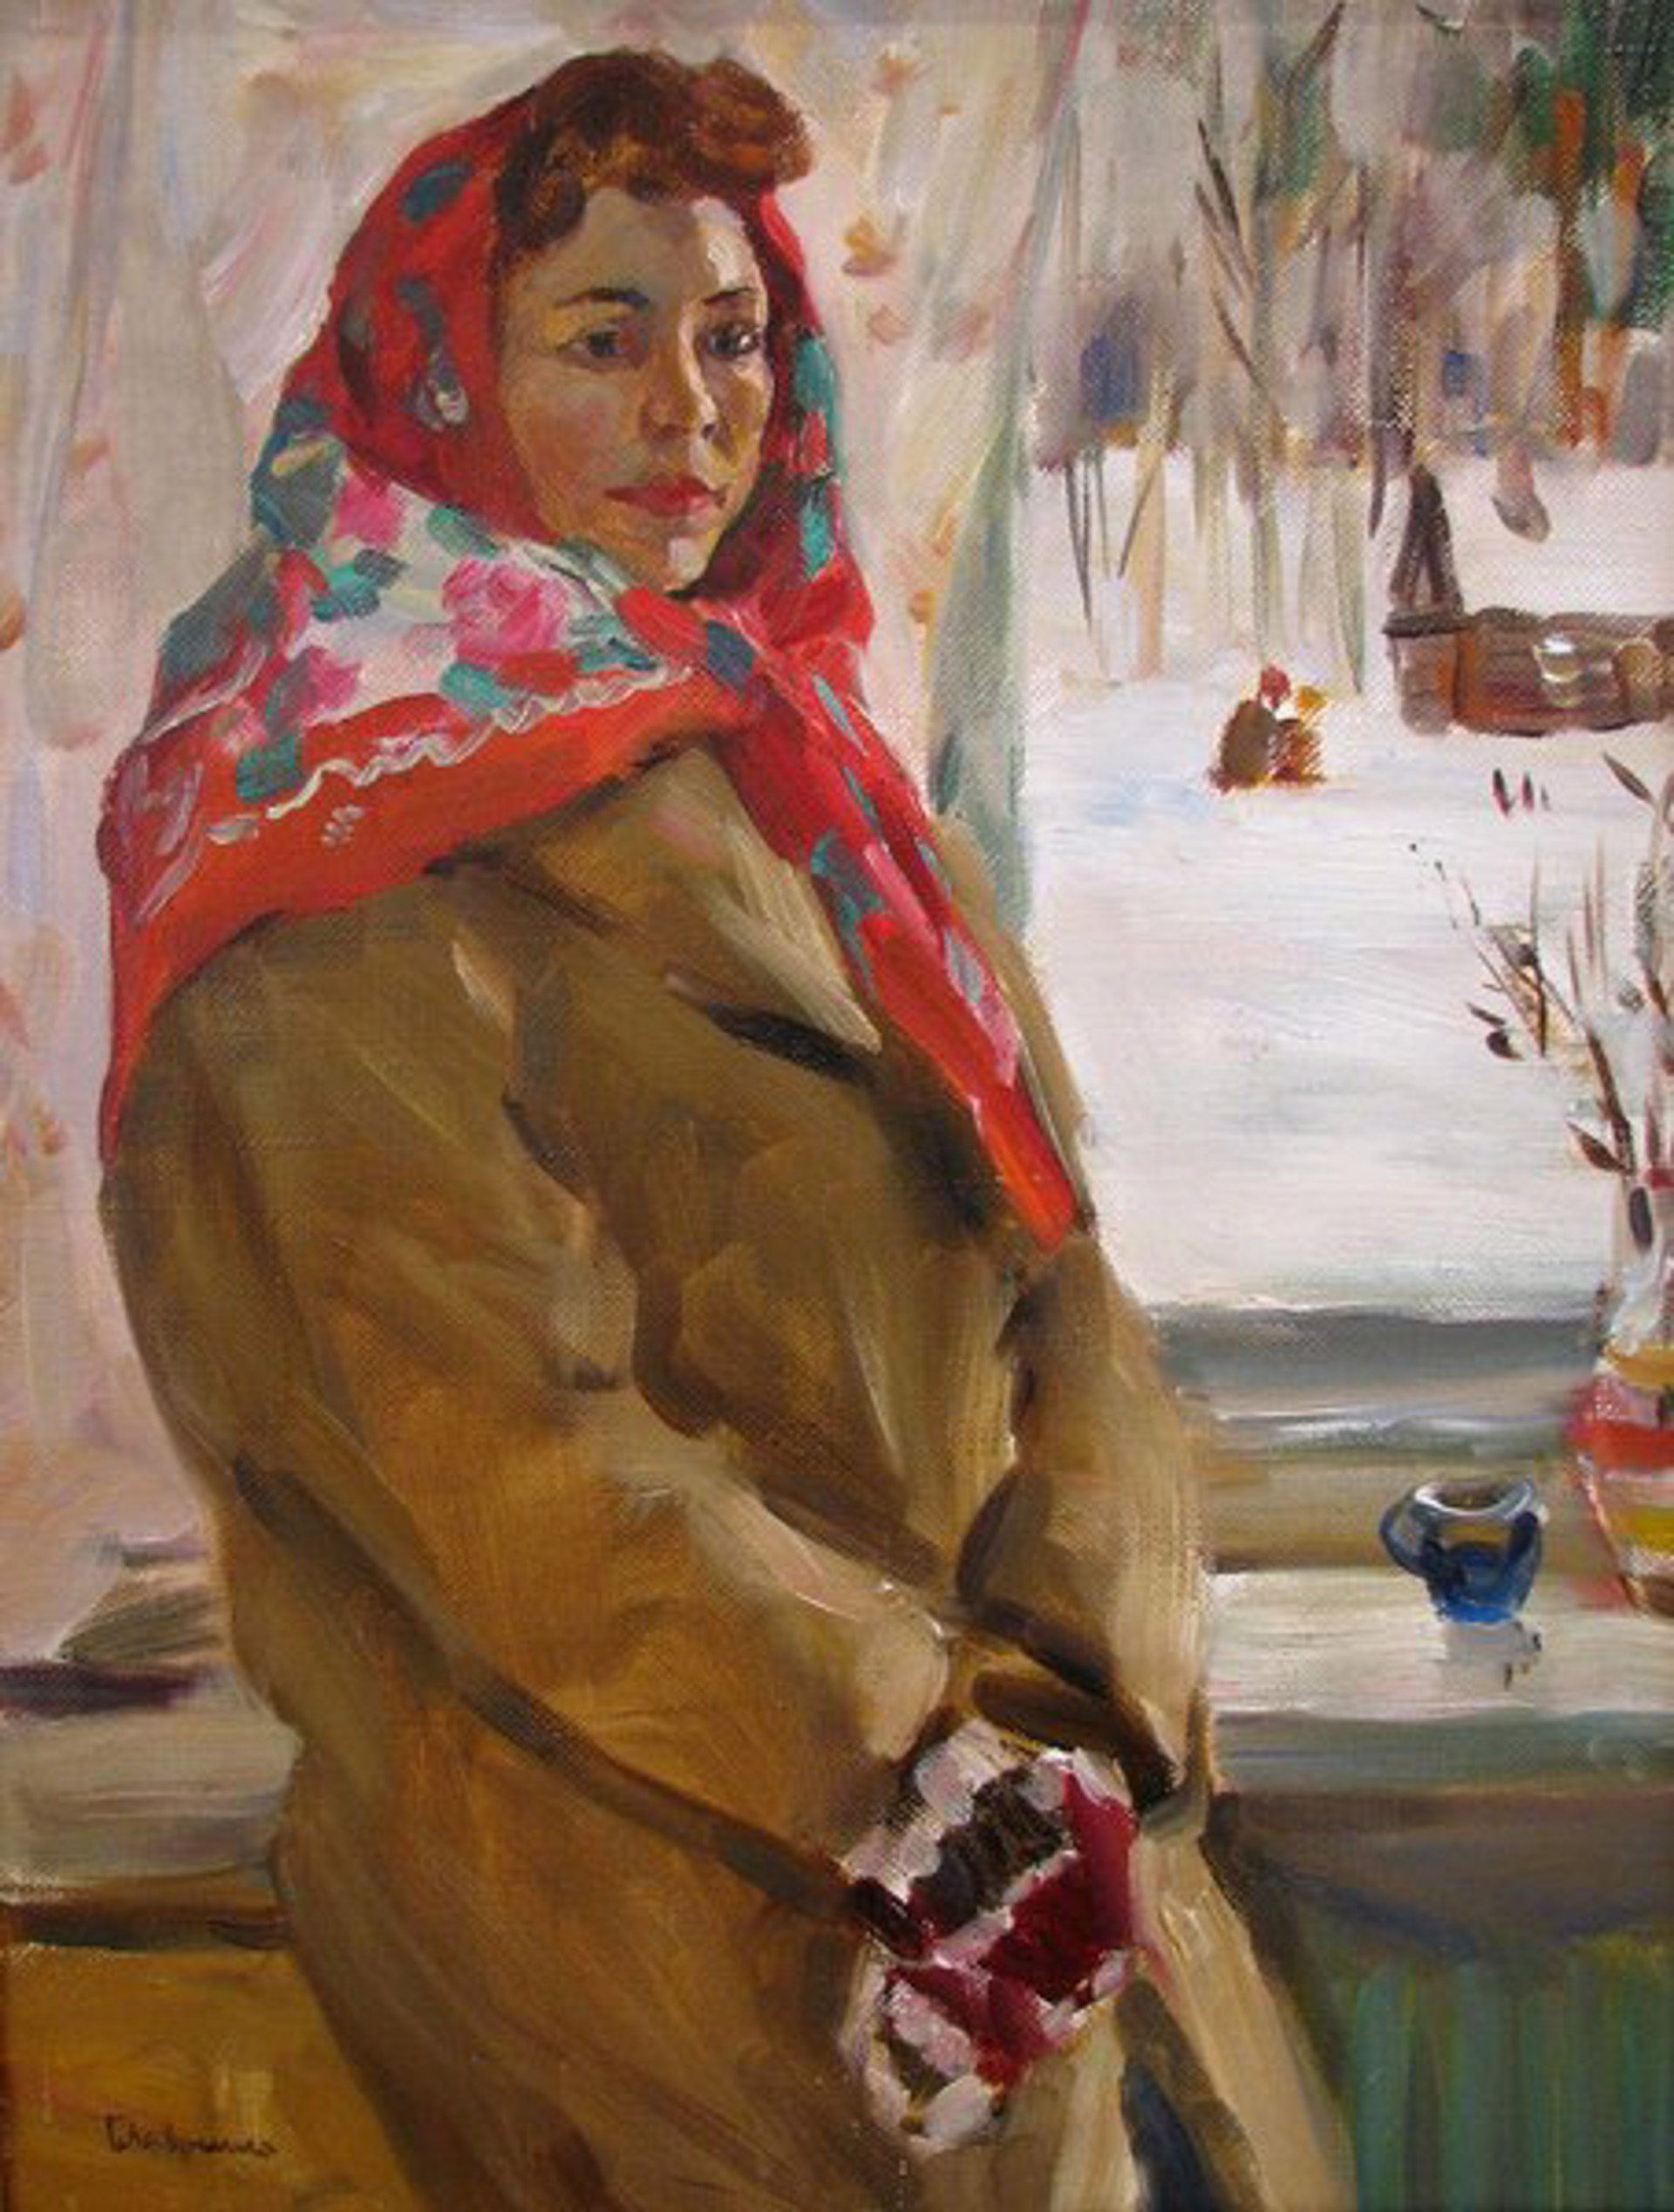 Woman by Boris Lavrenko